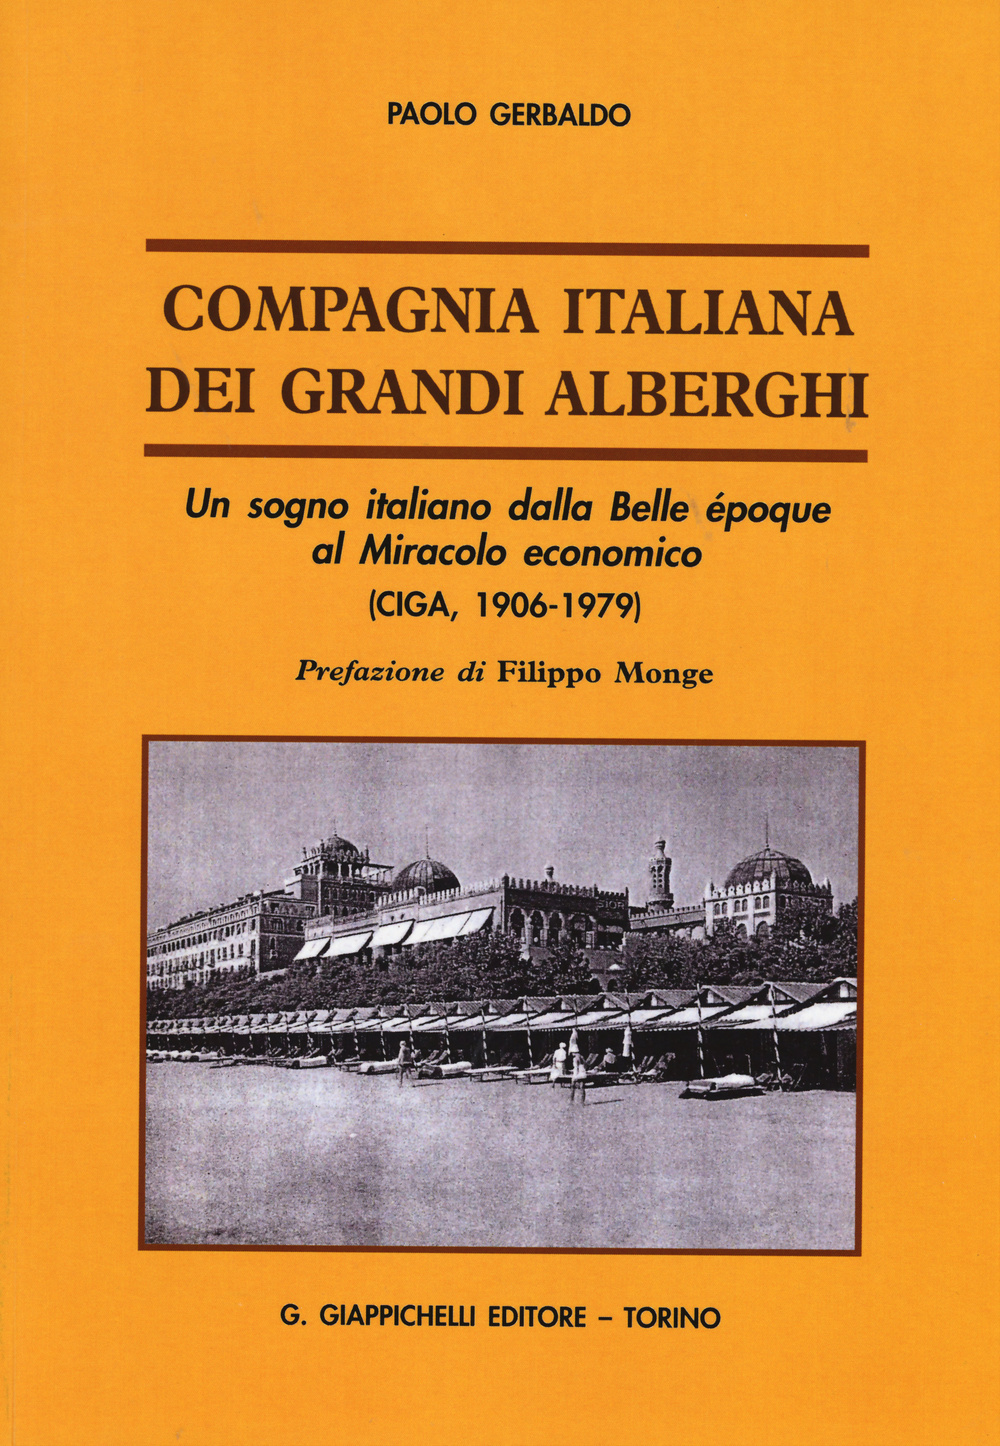 Compagnia italiana dei grandi alberghi. Un sogno italiano dalla Belle époque al Miracolo economico (CIGA, 1906-1979)